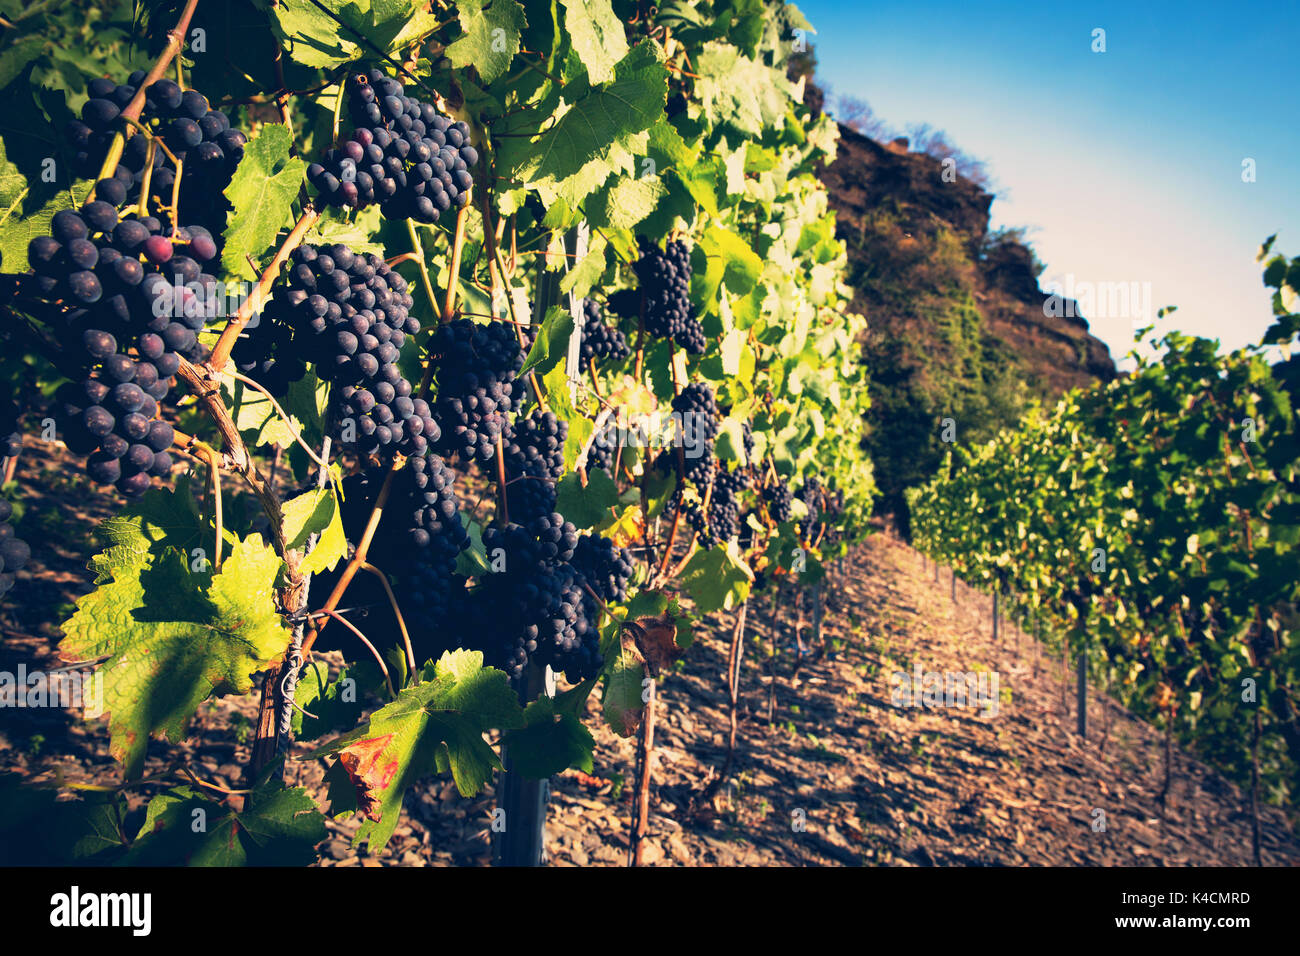 Las uvas rojas en el valle de ahr. Foto de stock